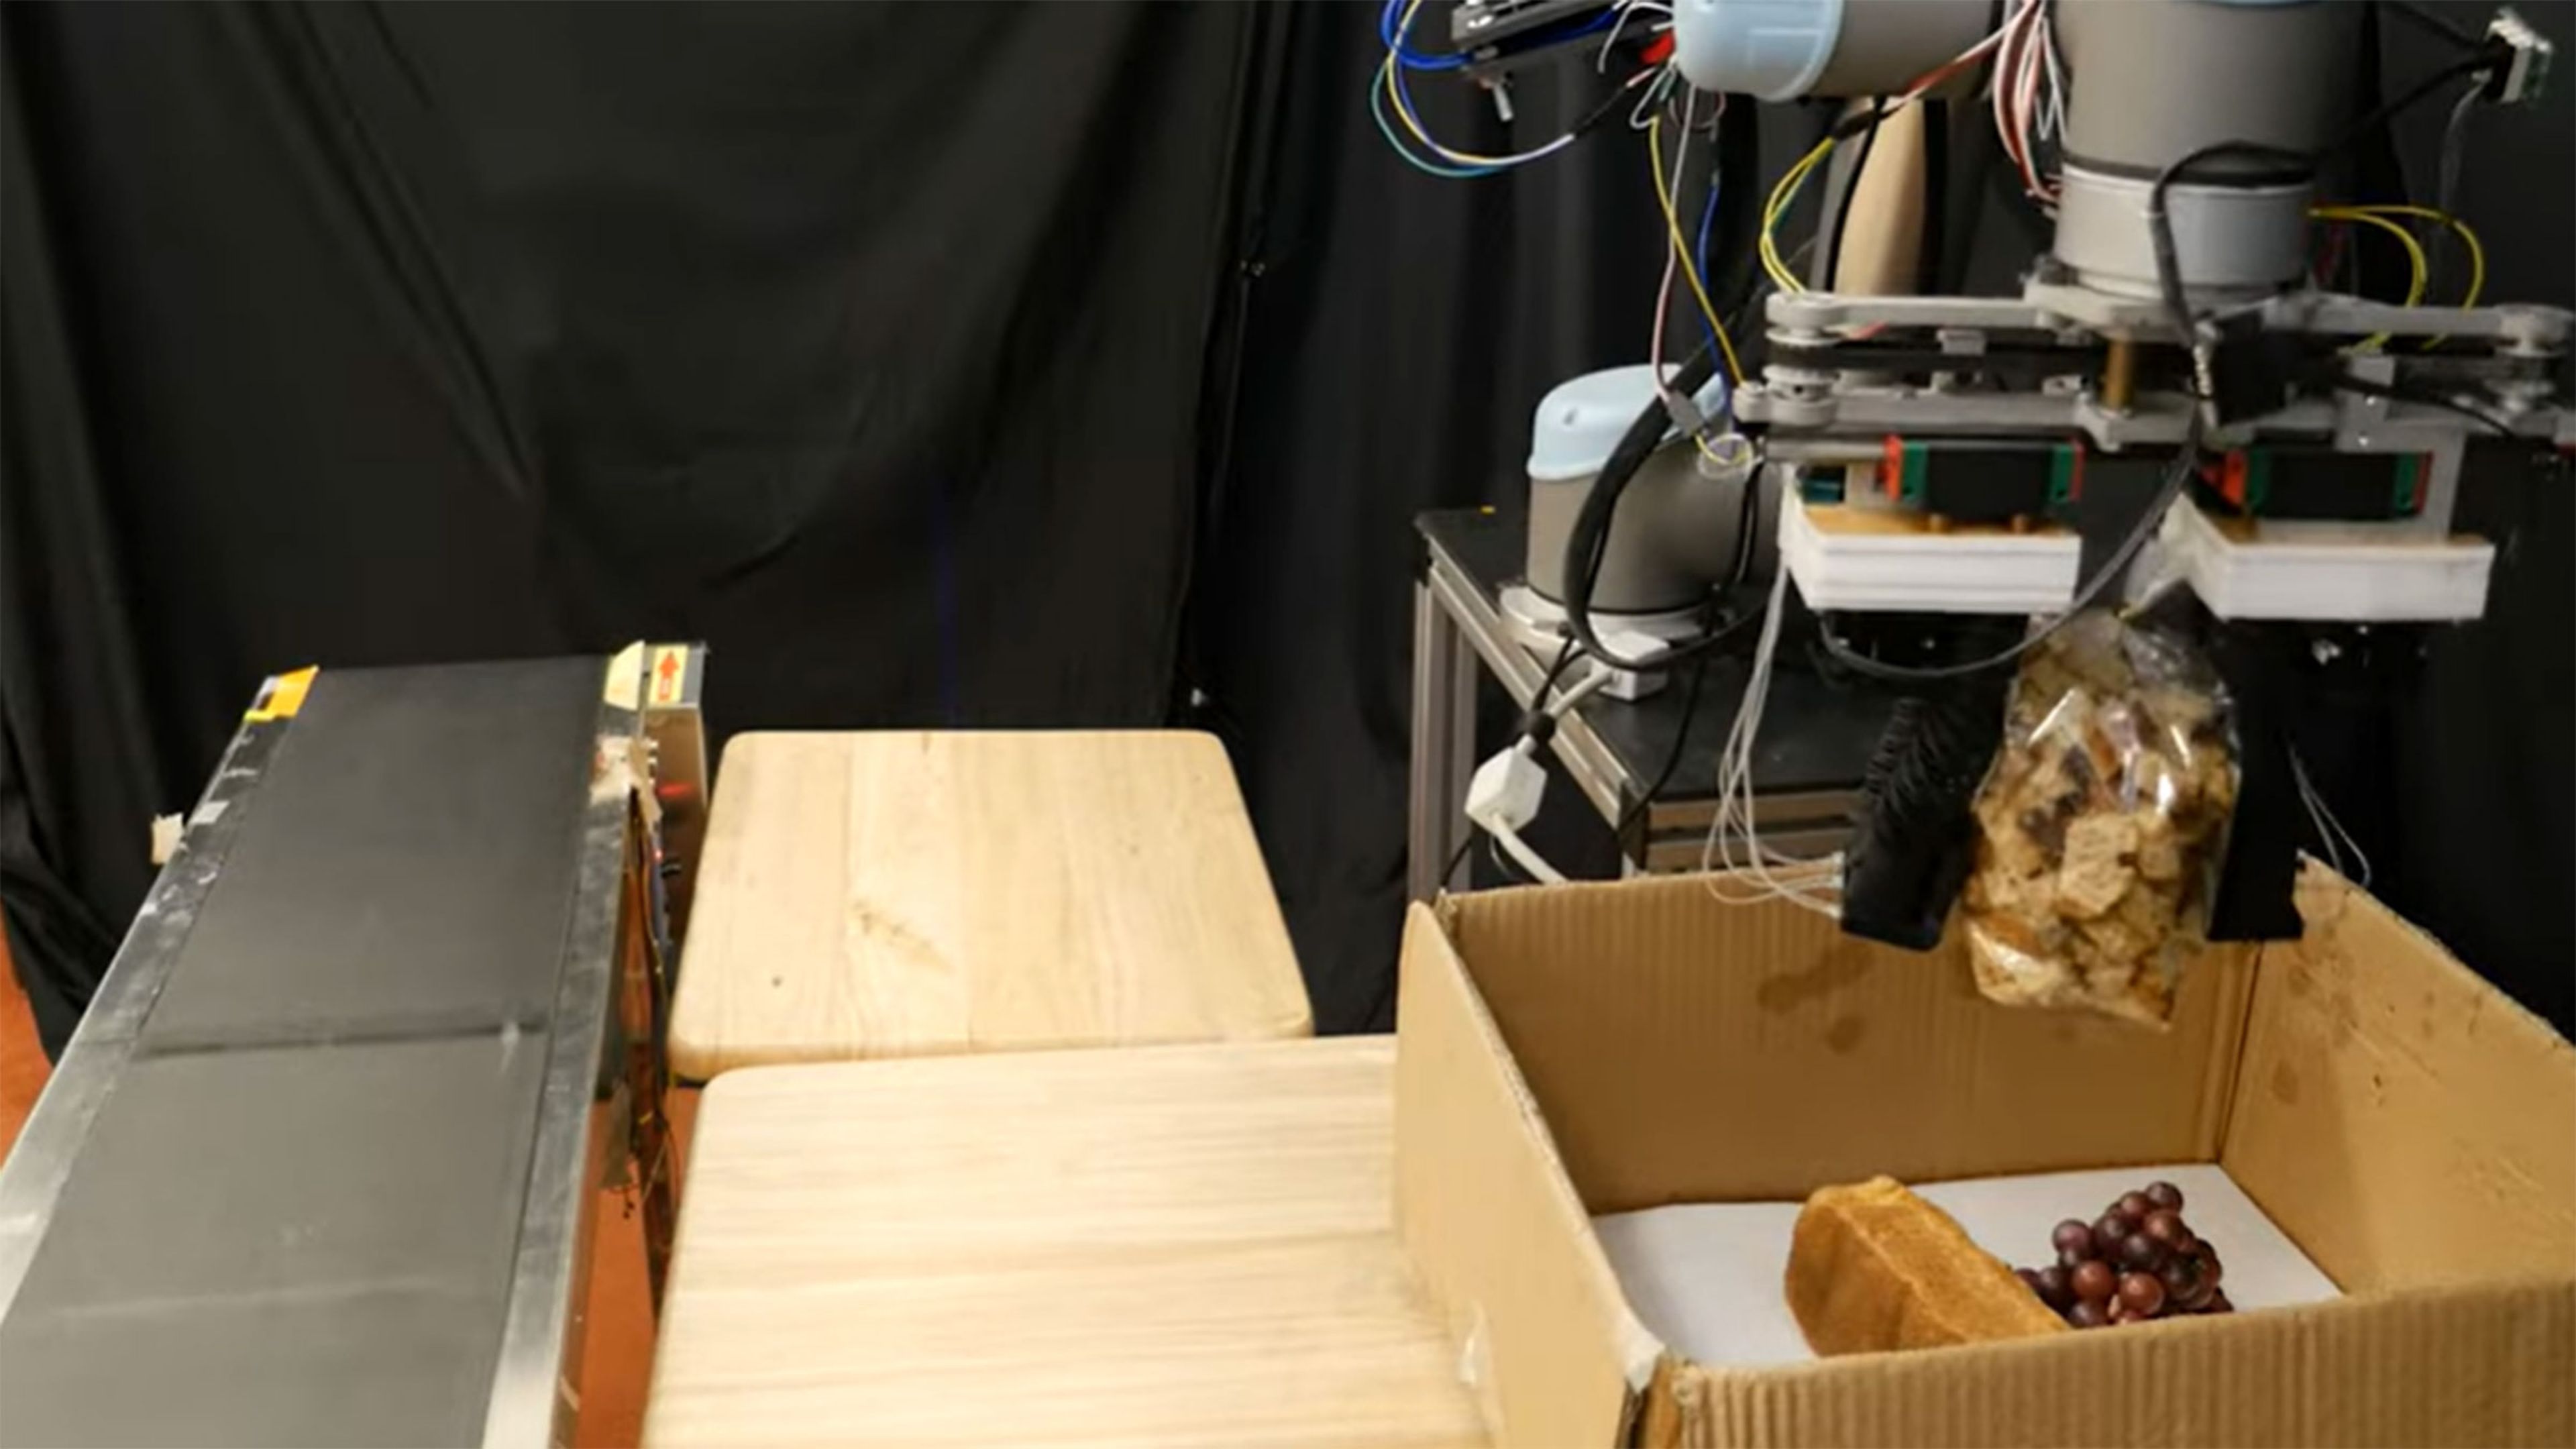 Investigadores diseñan un robot para empaquetar tus compras en el supermercado